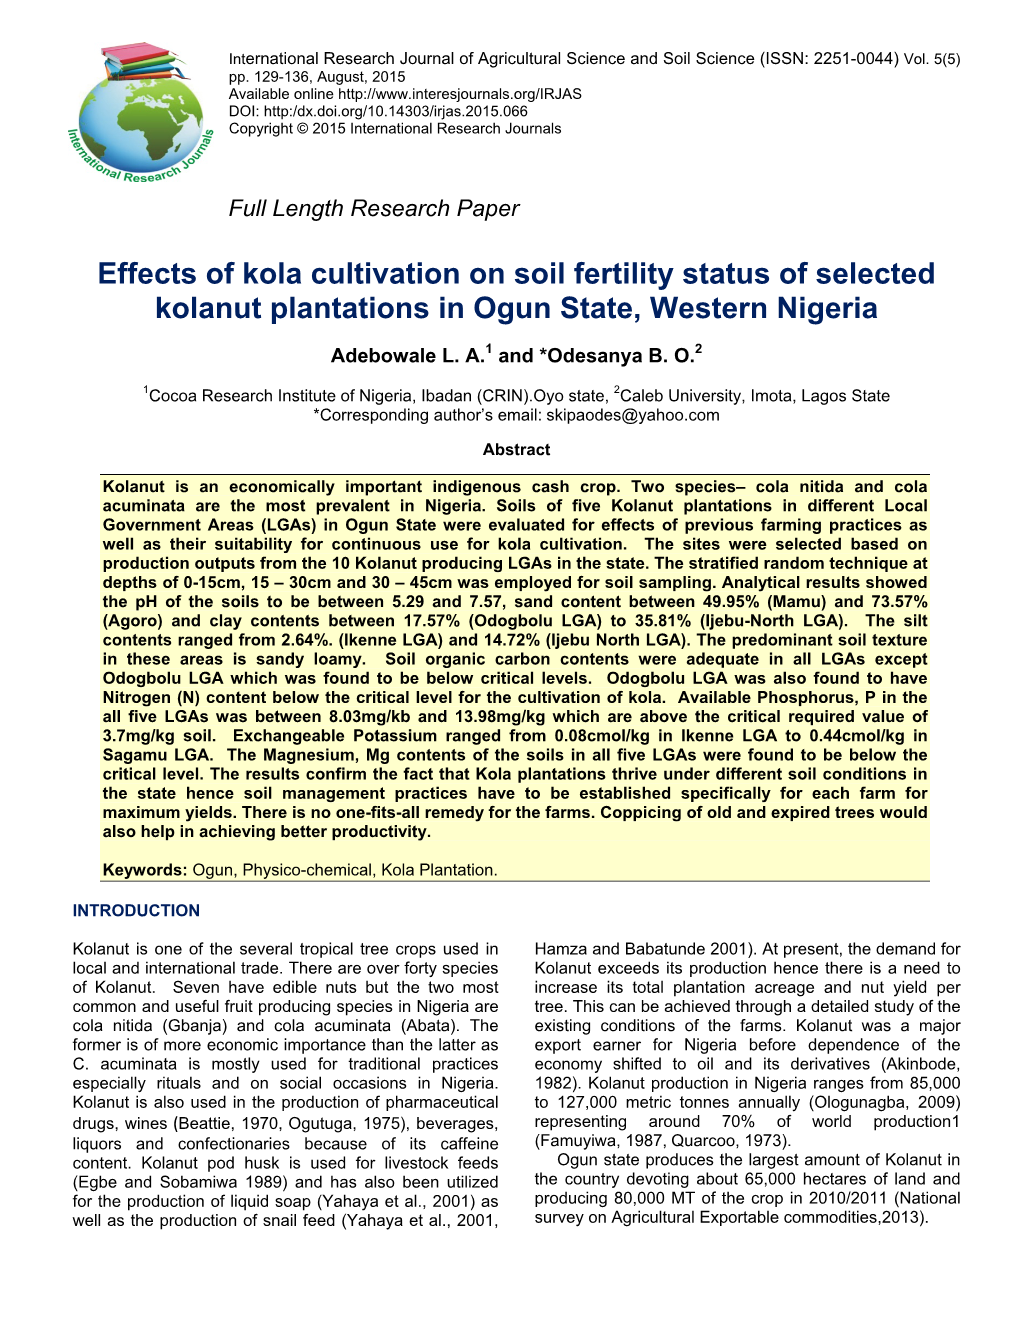 Effects of Kola Cultivation on Soil Fertility Status of Selected Kolanut Plantations in Ogun State, Western Nigeria